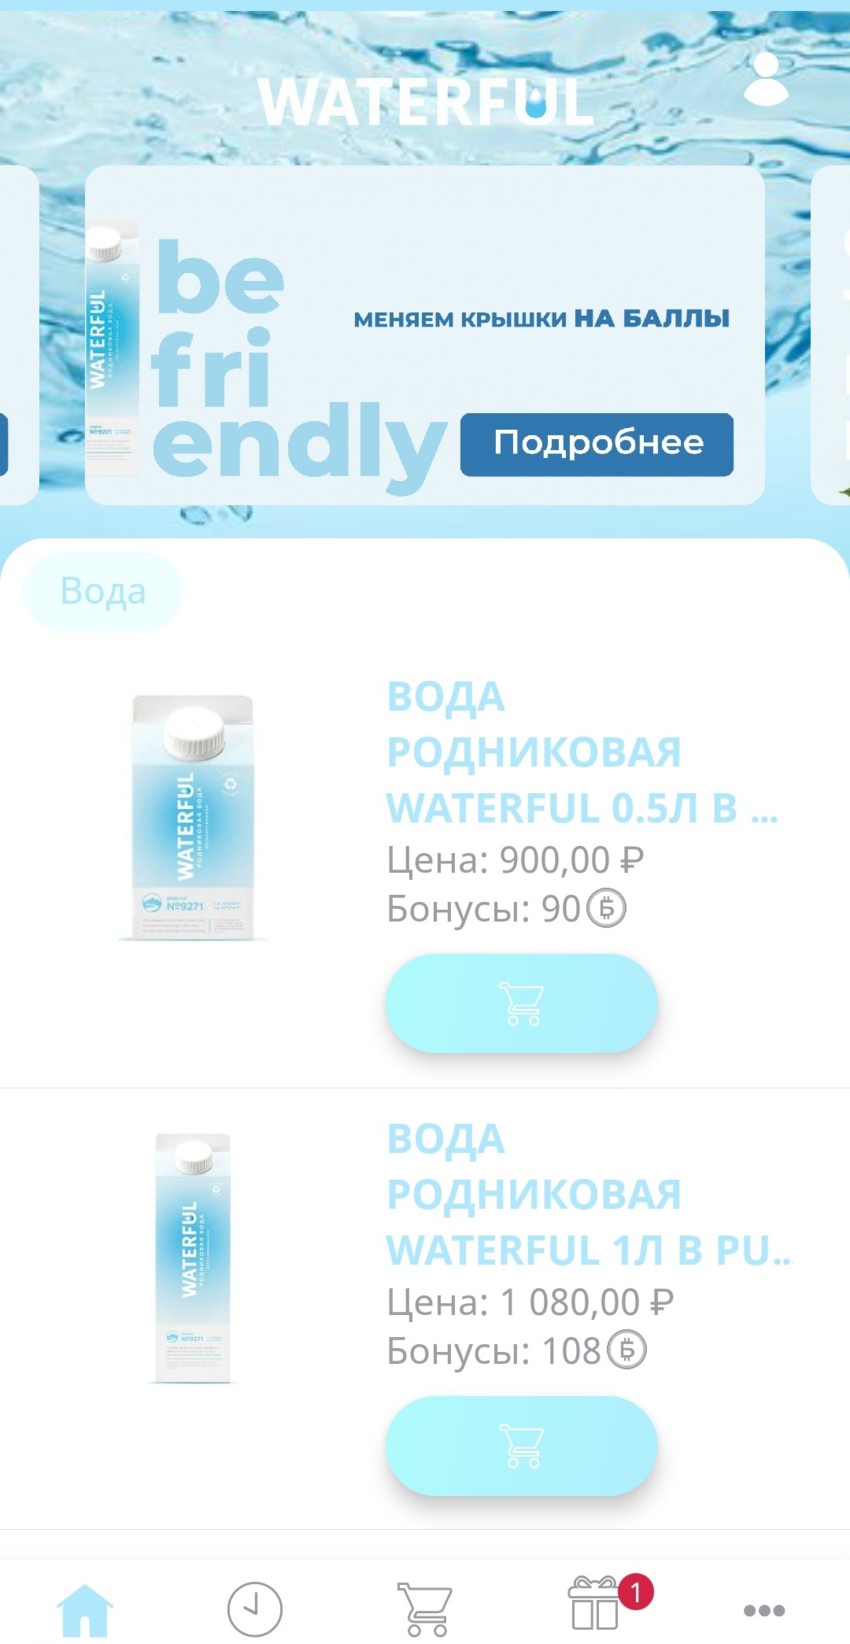 Новое приложение Waterful заберет упаковку на переработку!